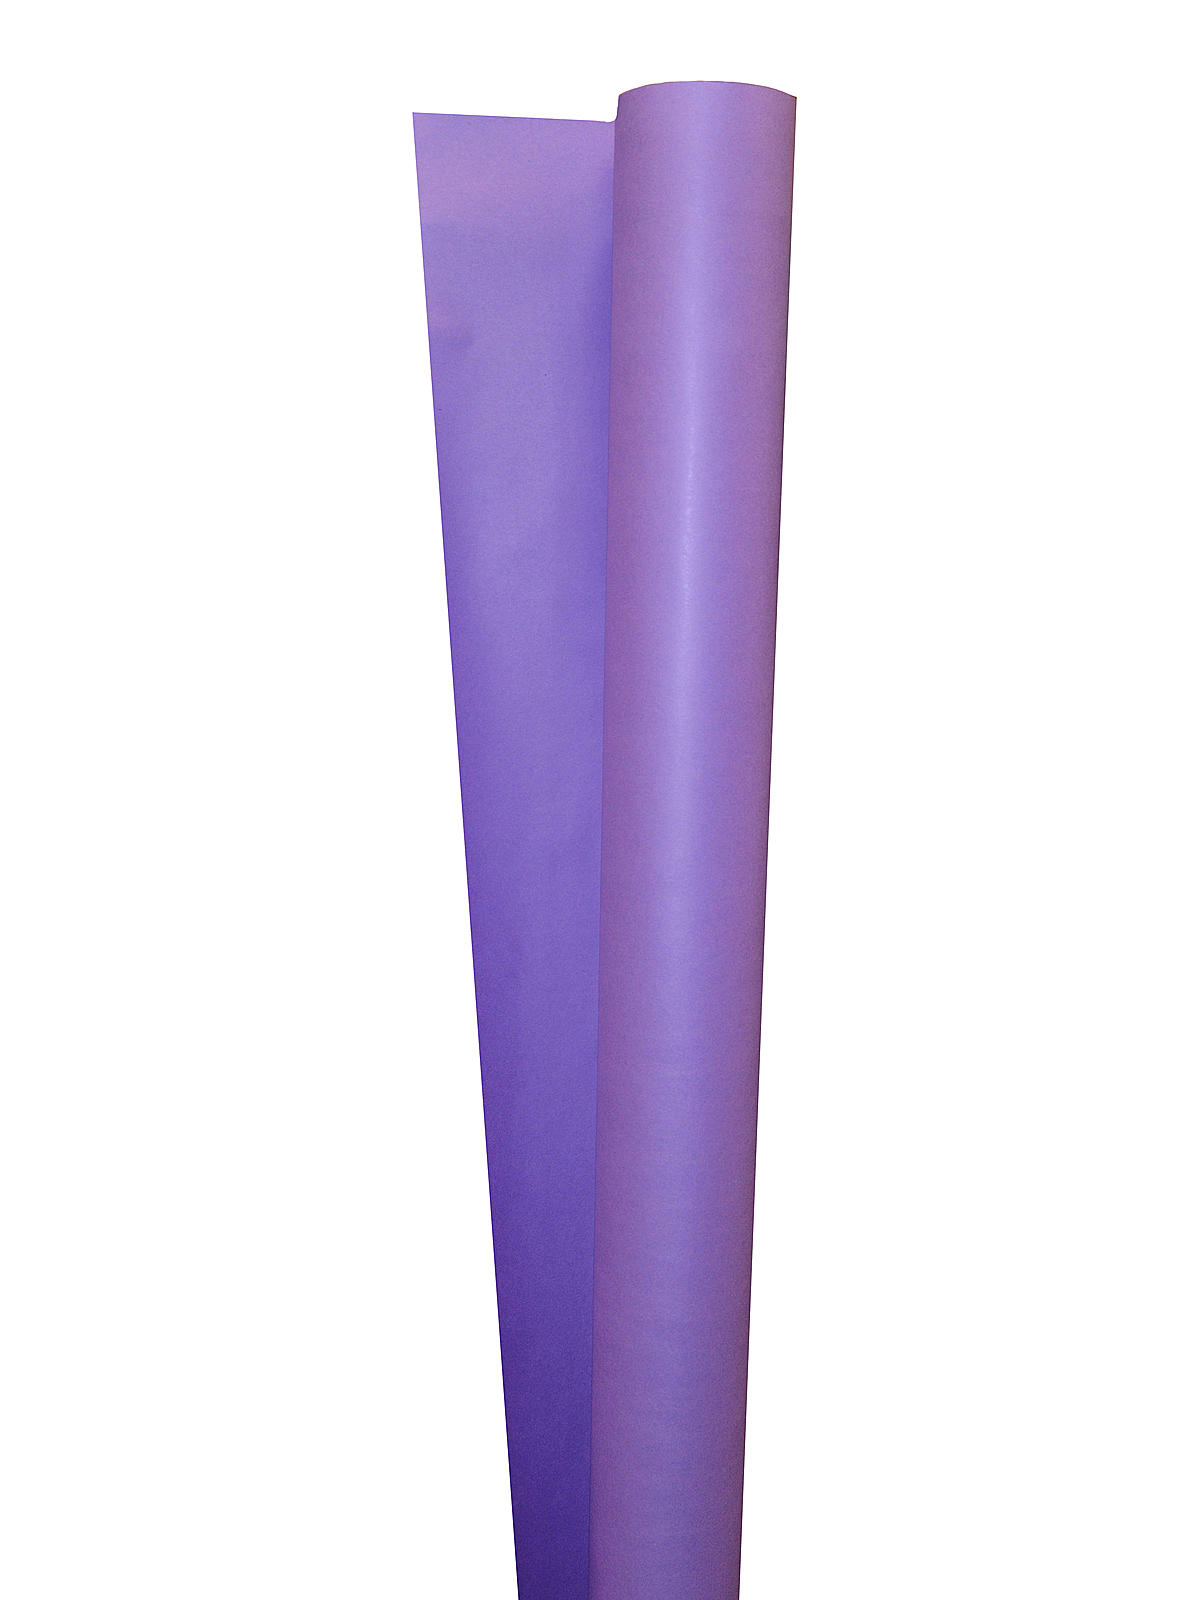 BEMISS JASON Spectra Art Kraft Paper Roll Purple 48 In. X 200 Ft.